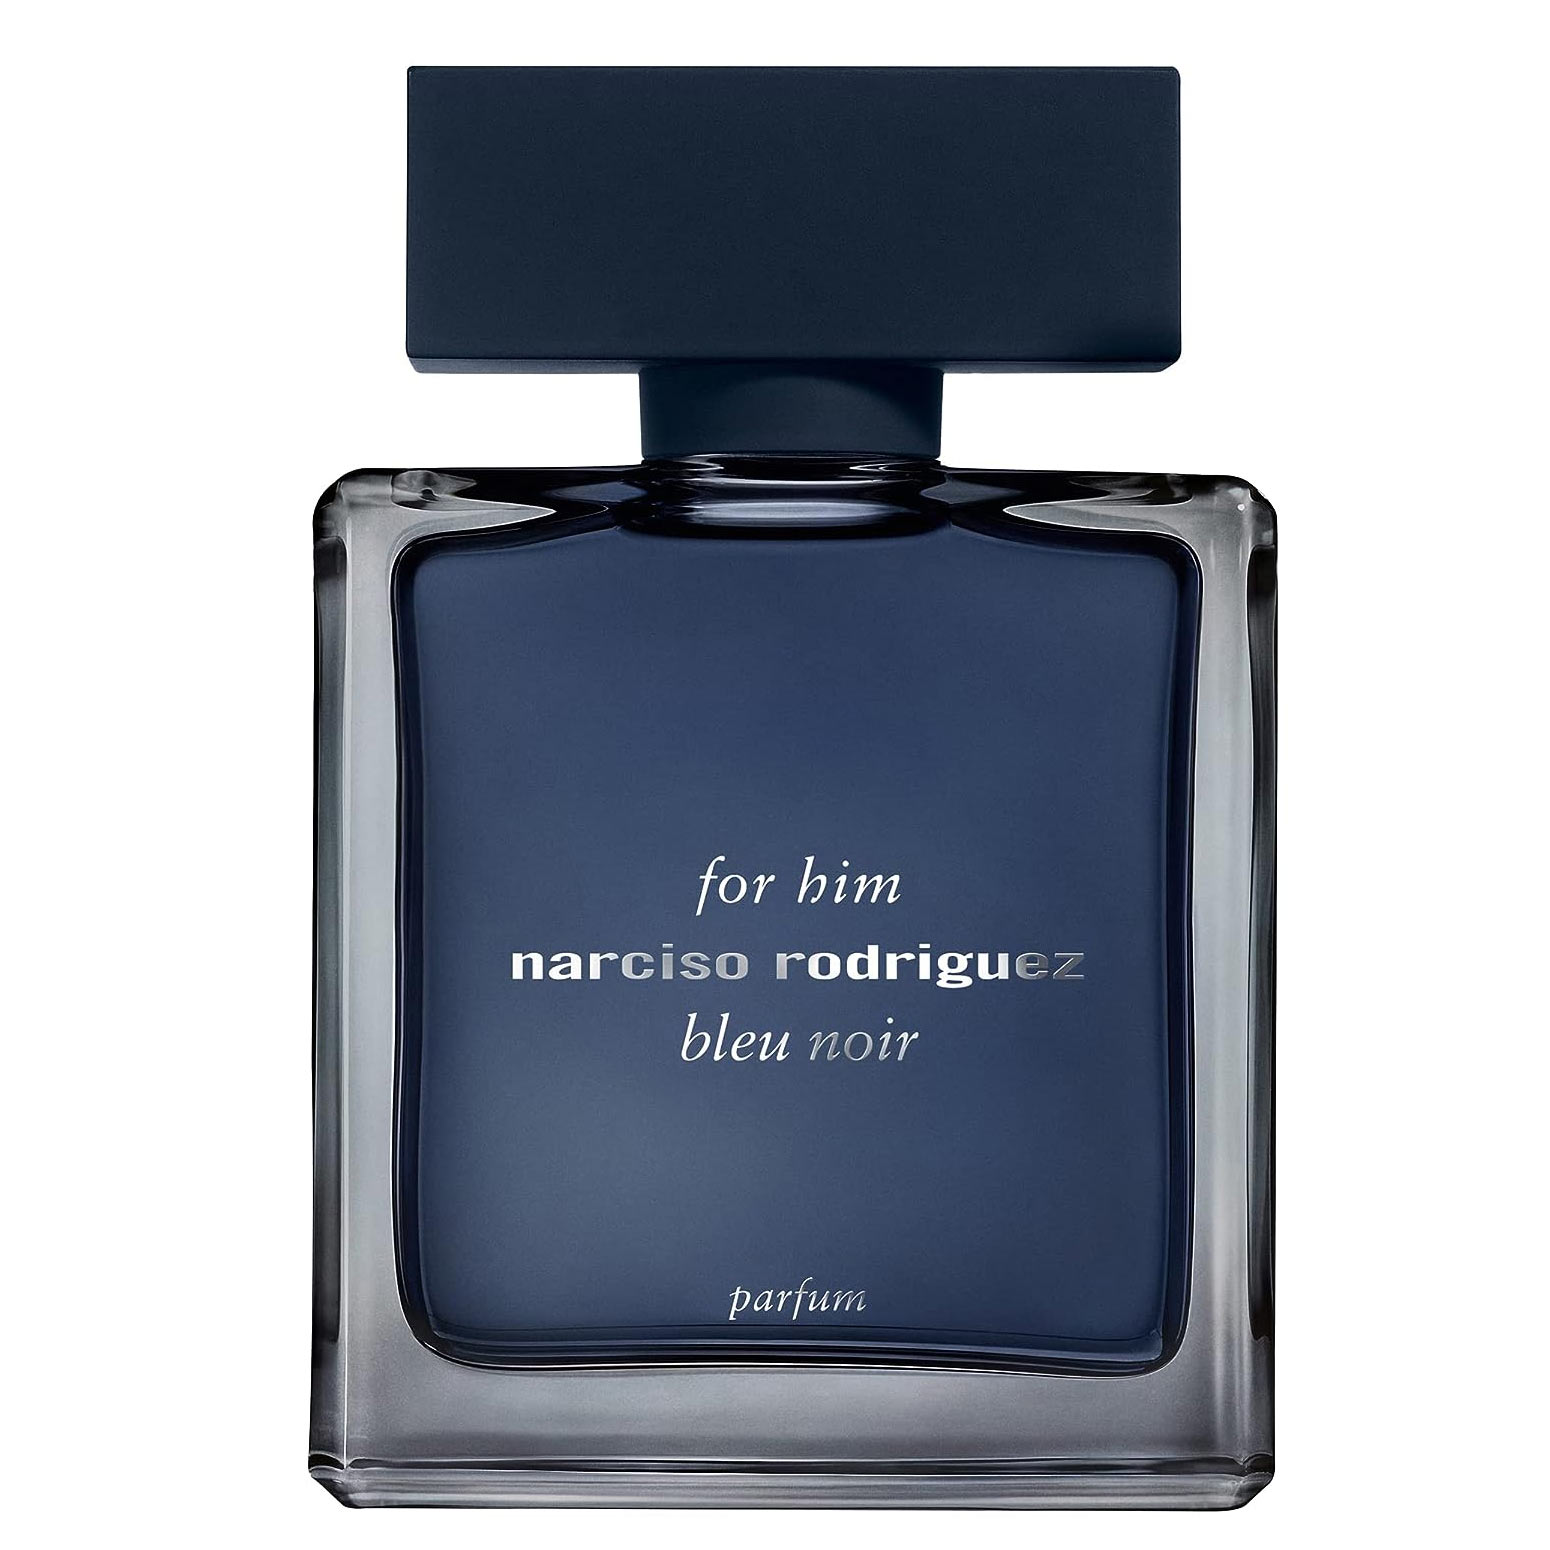 Narciso-Rodriguez-for-Him-Bleu-Noir-Parfum-Narciso-Rodriguez